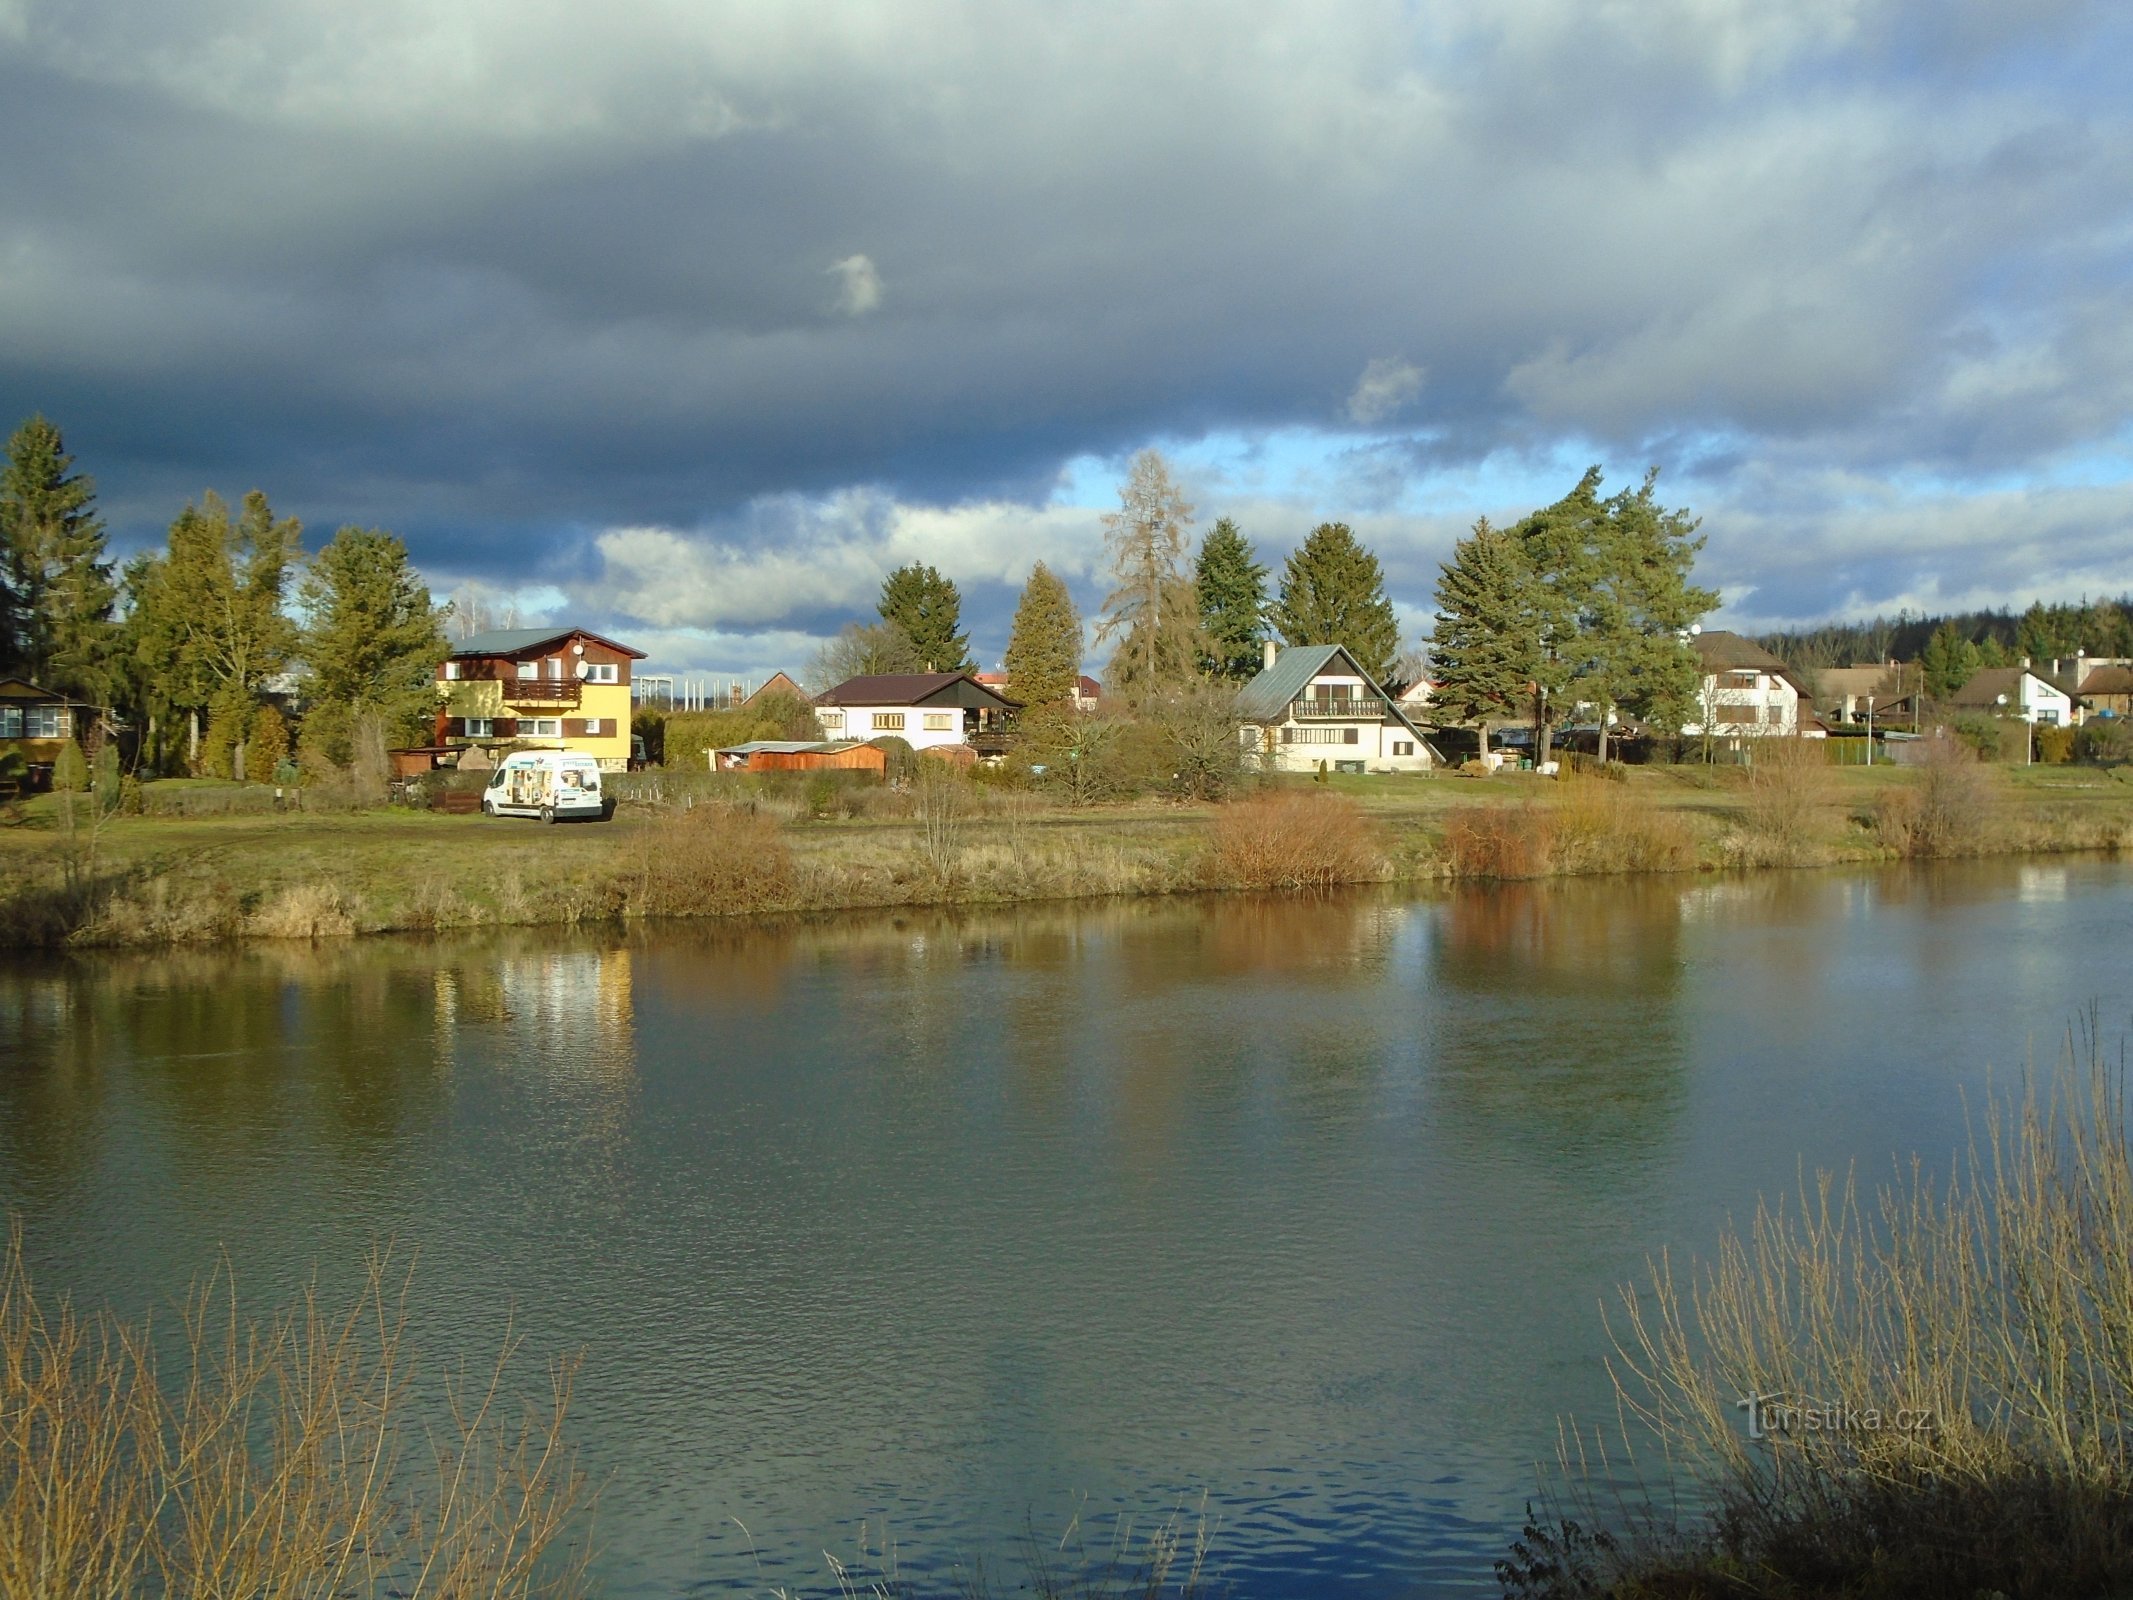 Veduta dei cottage vicino a Svinárek dall'altra sponda (Hradec Králové, 24.12.2018)